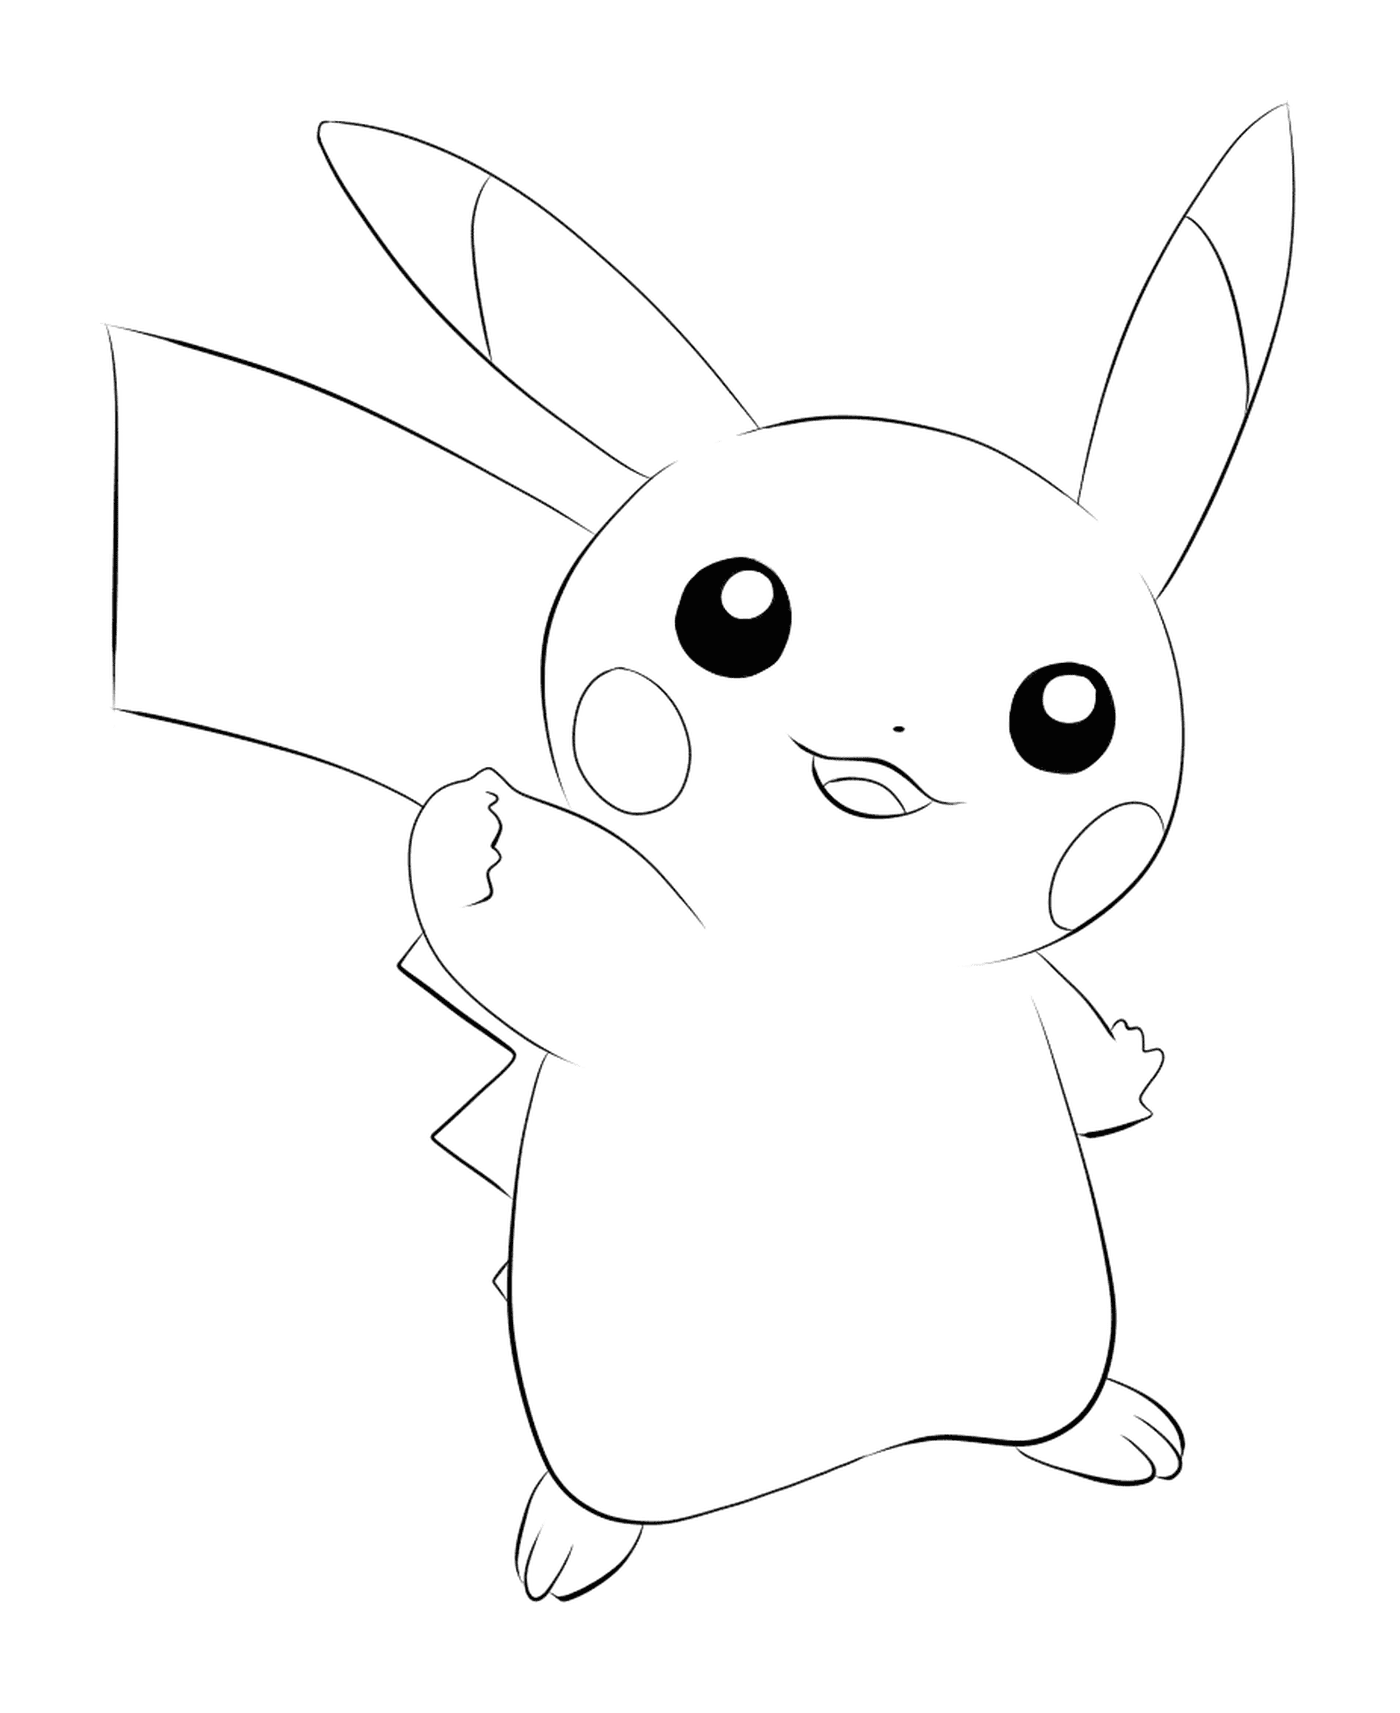  Pikachu, 标志性Pokémon 